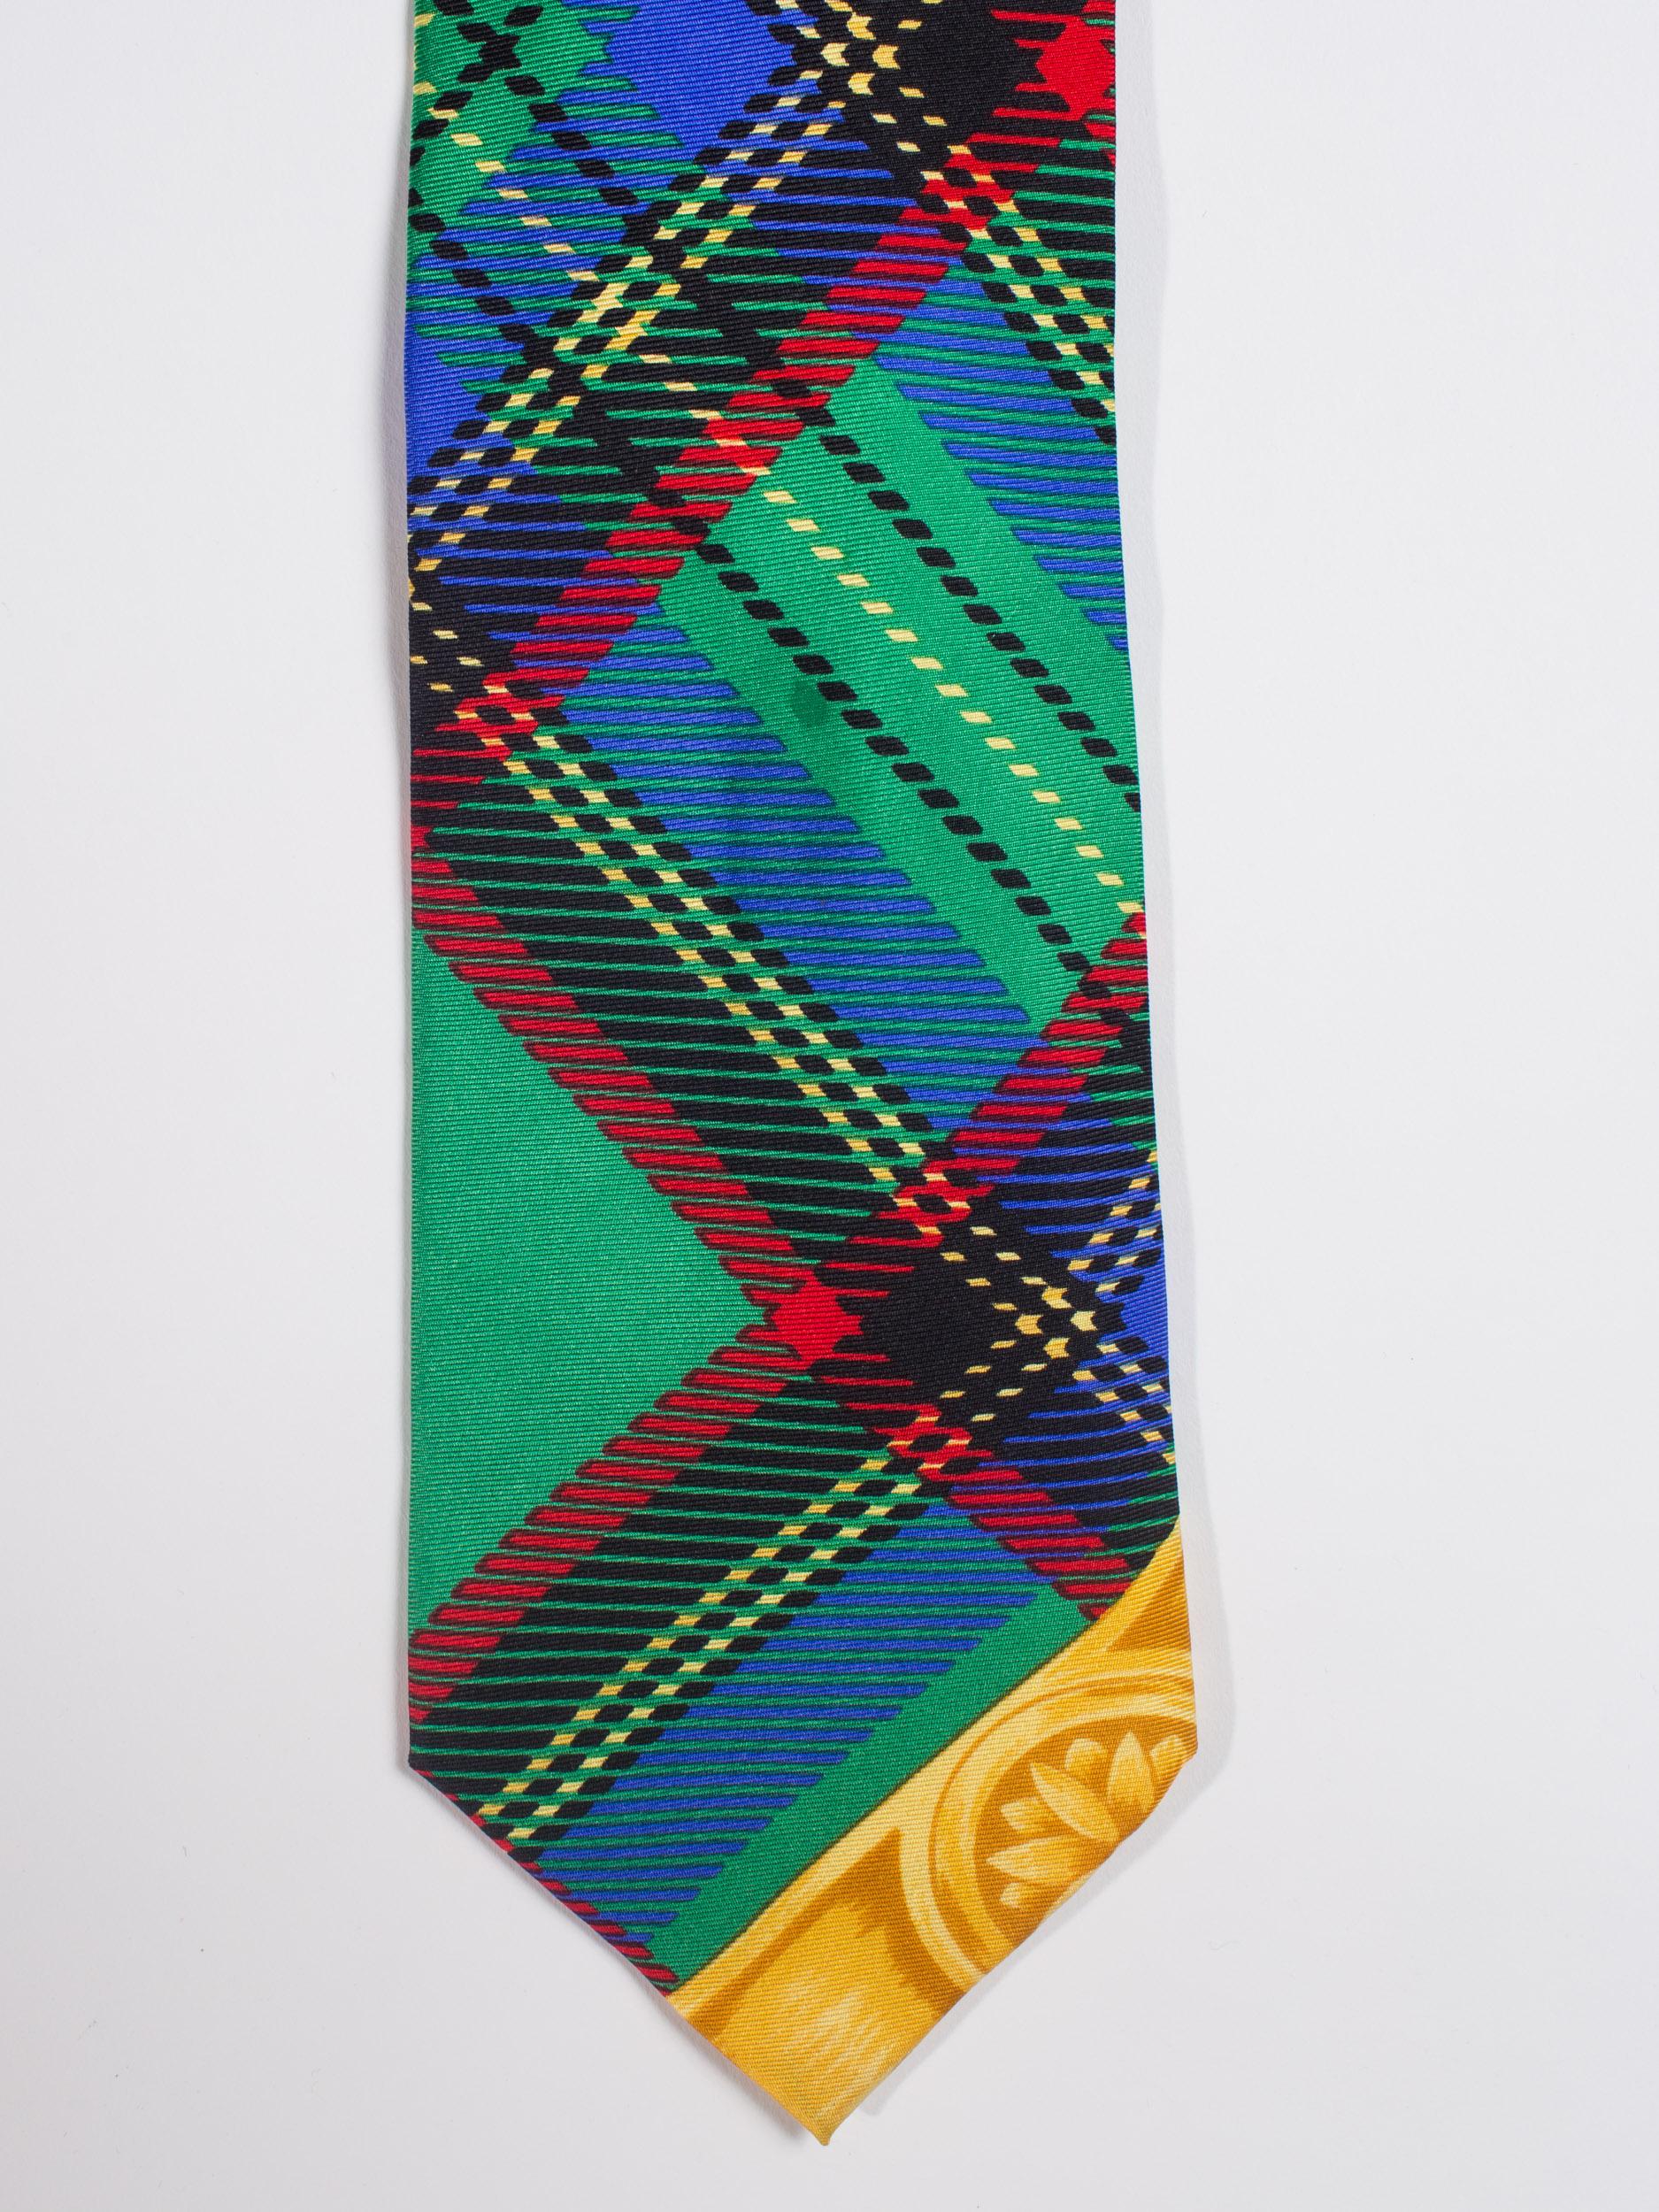 cravate en soie pour hommes GIANNI VERSACE, années 1990, à carreaux verts